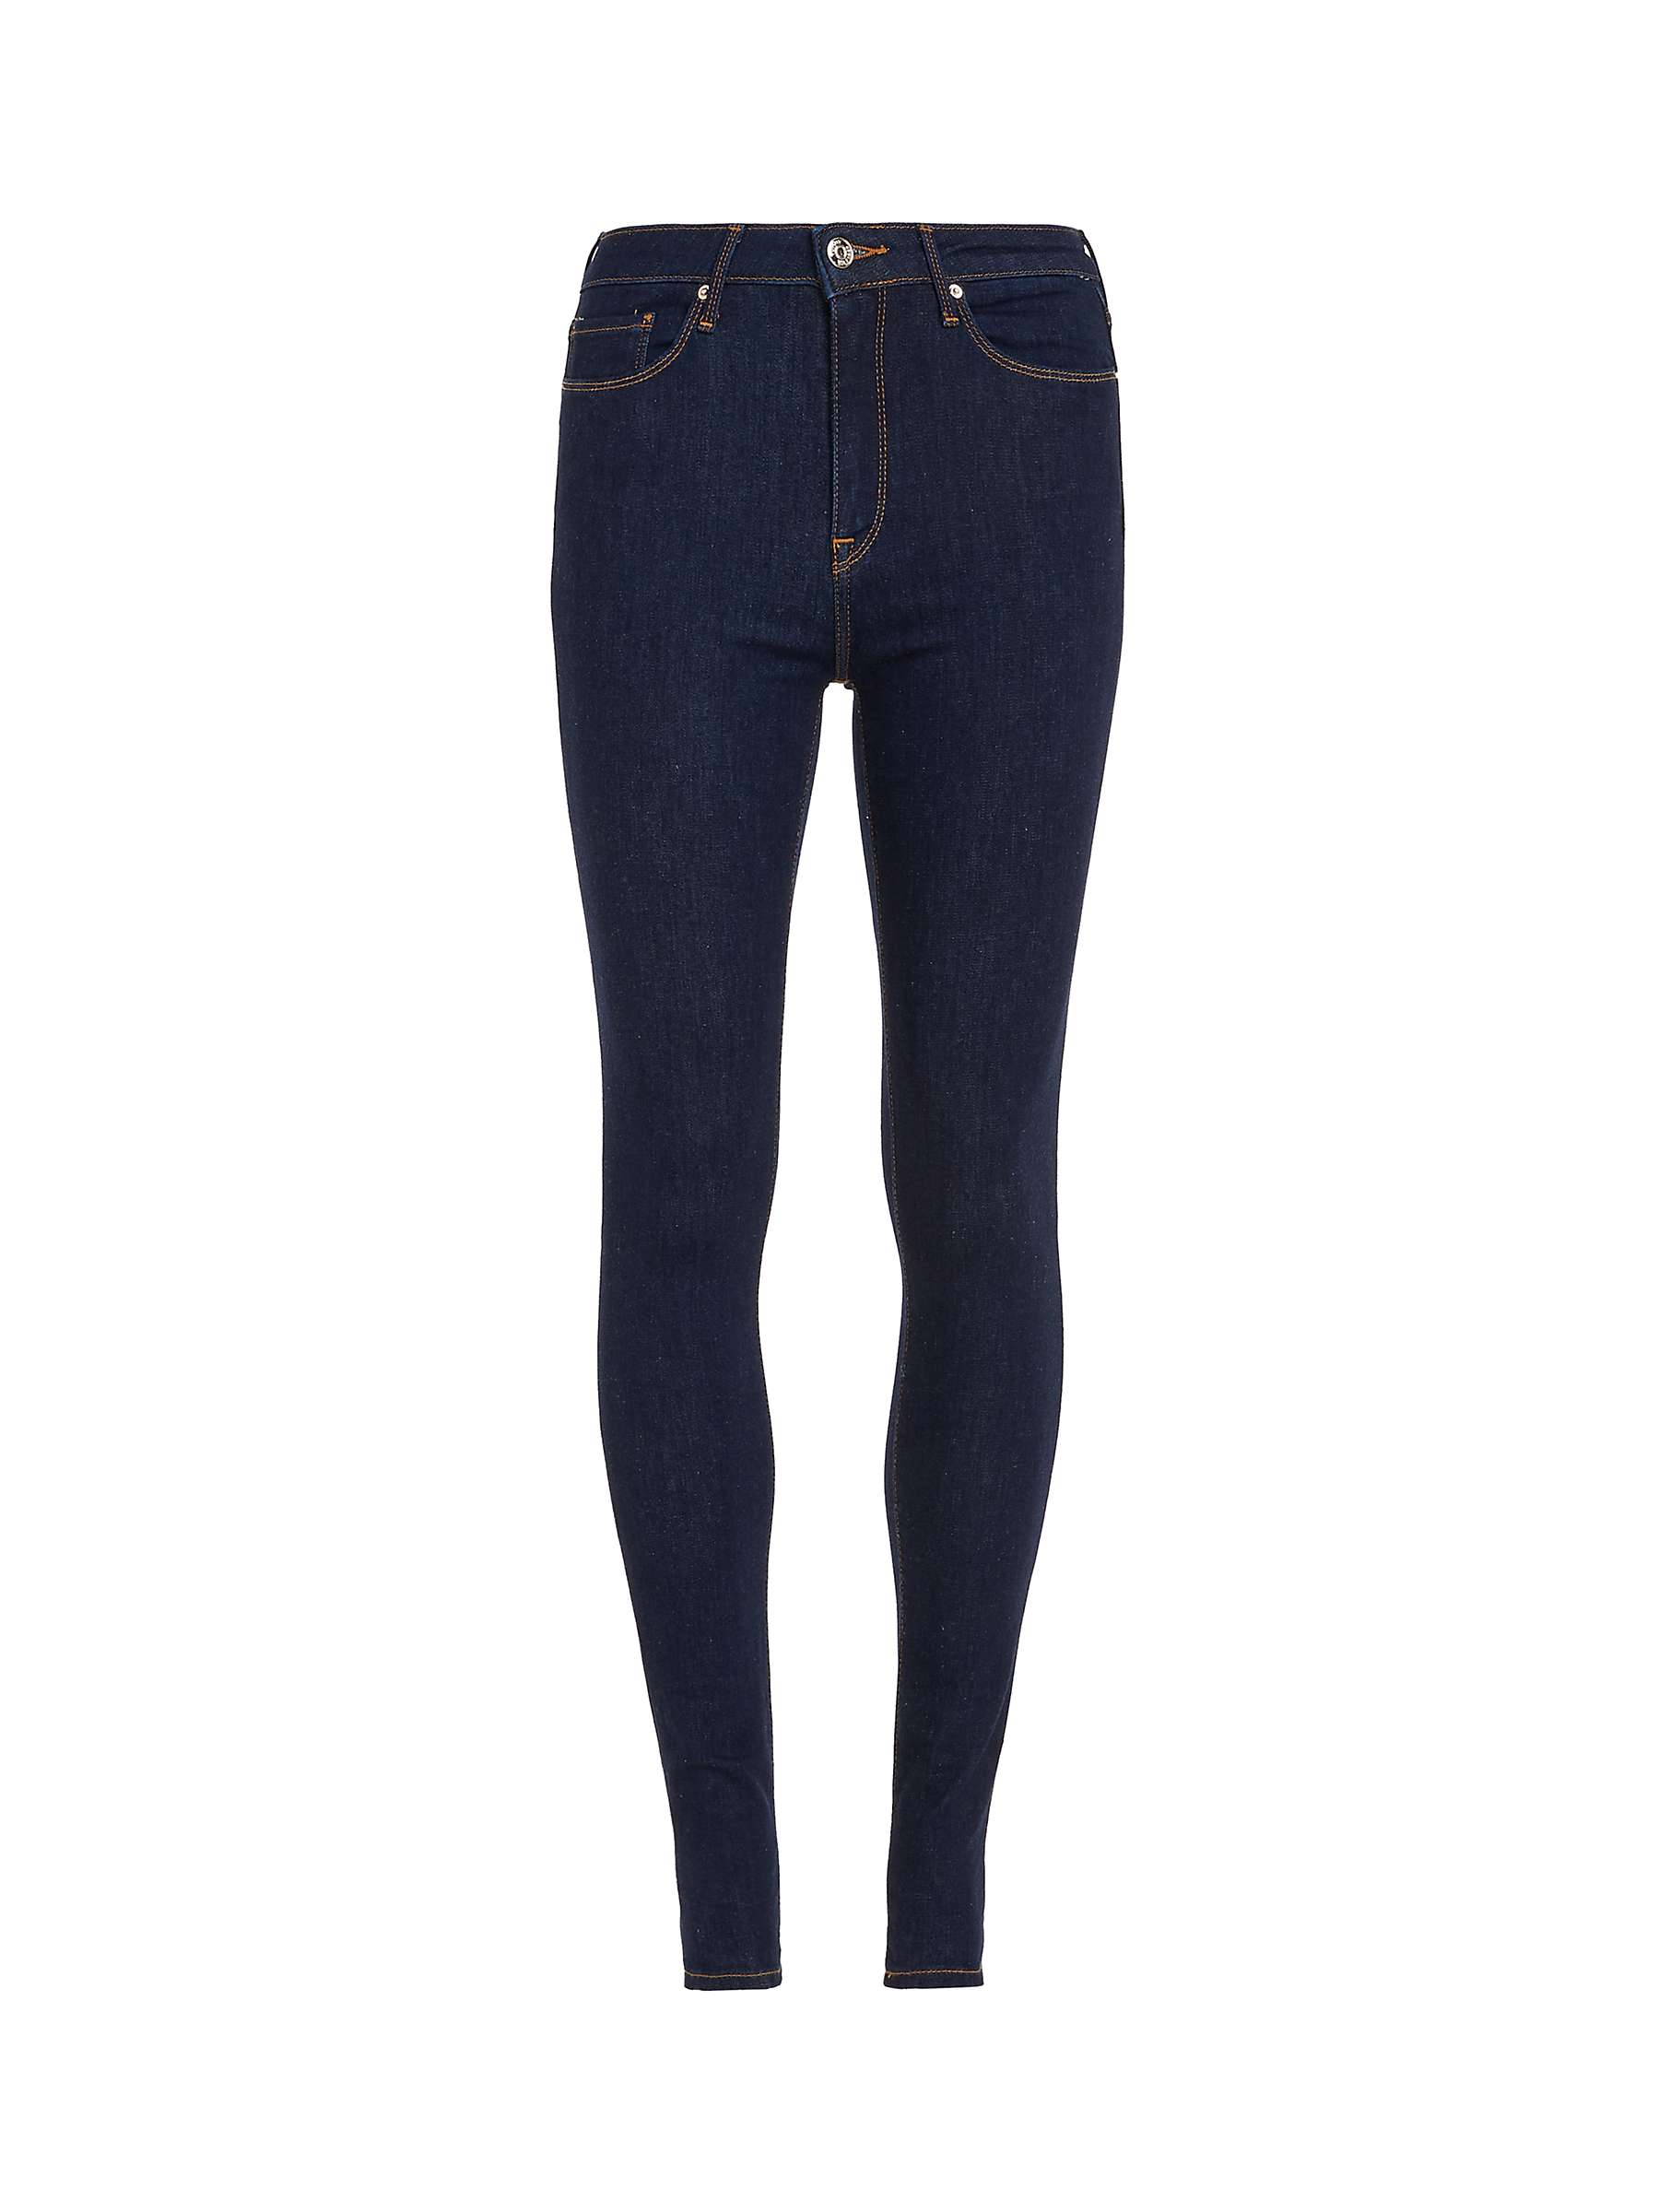 Buy Tommy Hilfiger Skinny Jeans, Steffie Online at johnlewis.com